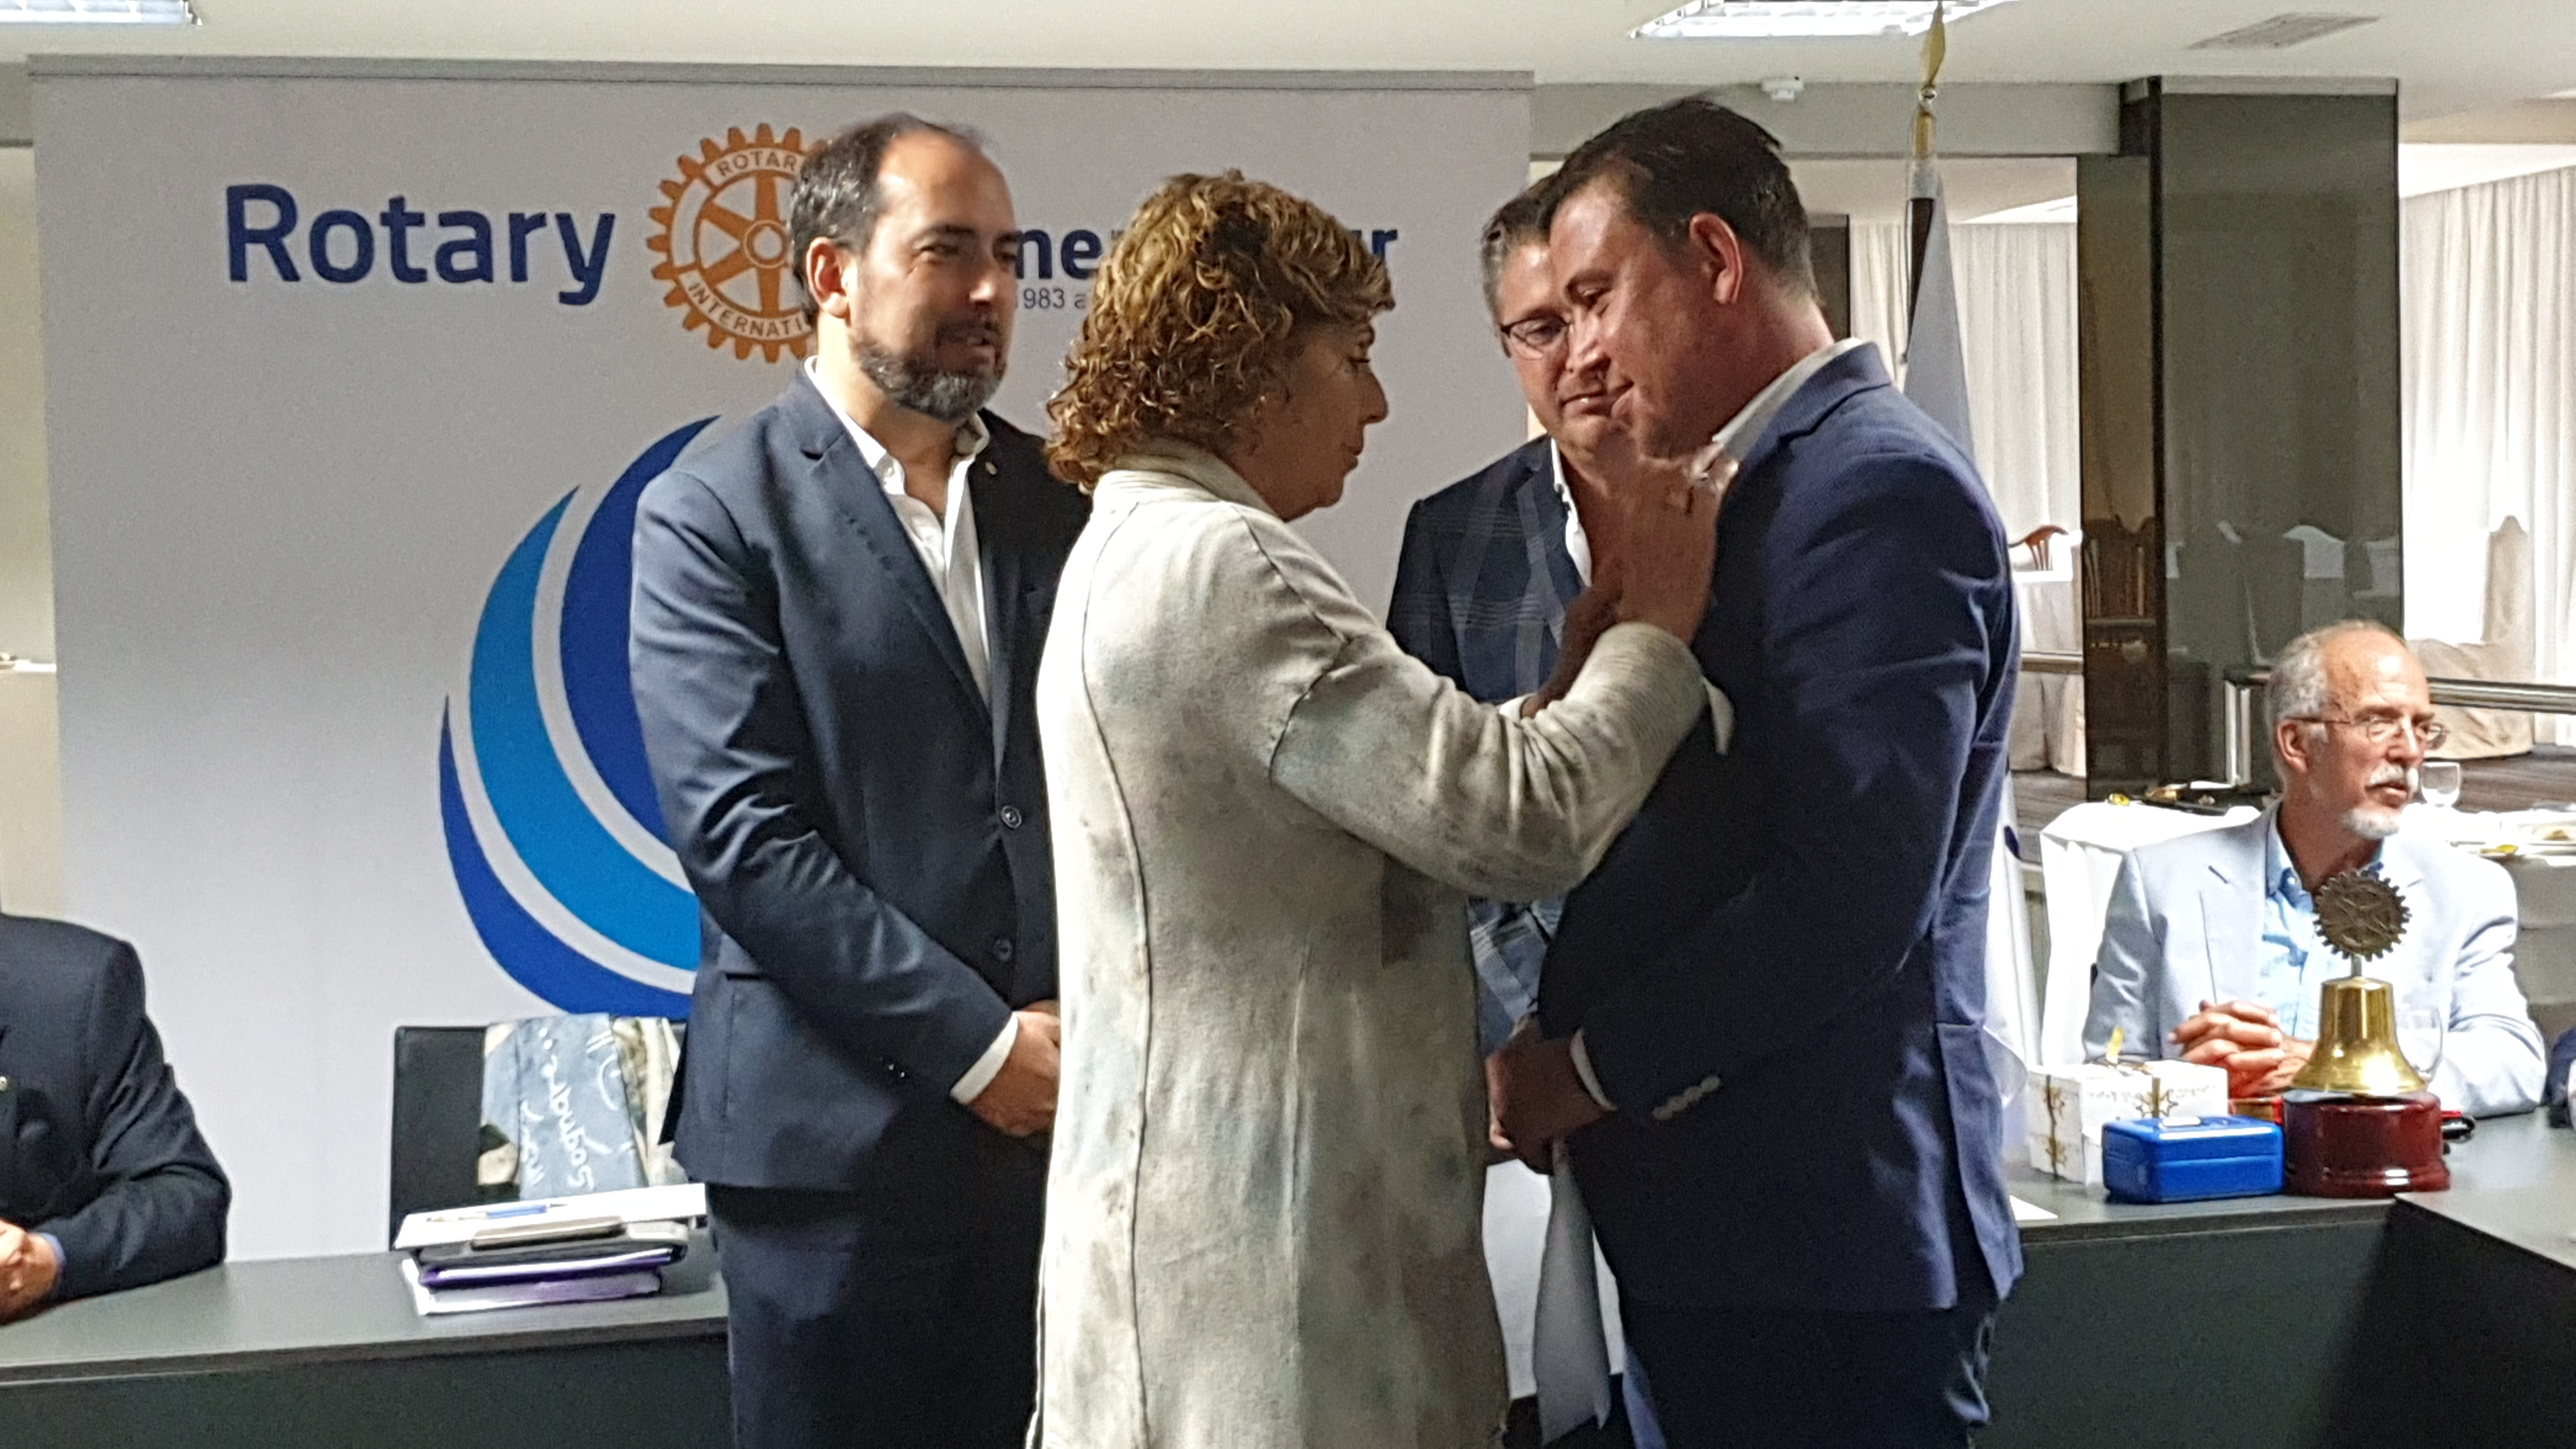 Rotary Tenerife Sur impone el pin rotario a su nuevo miembro Mariano García Fiz